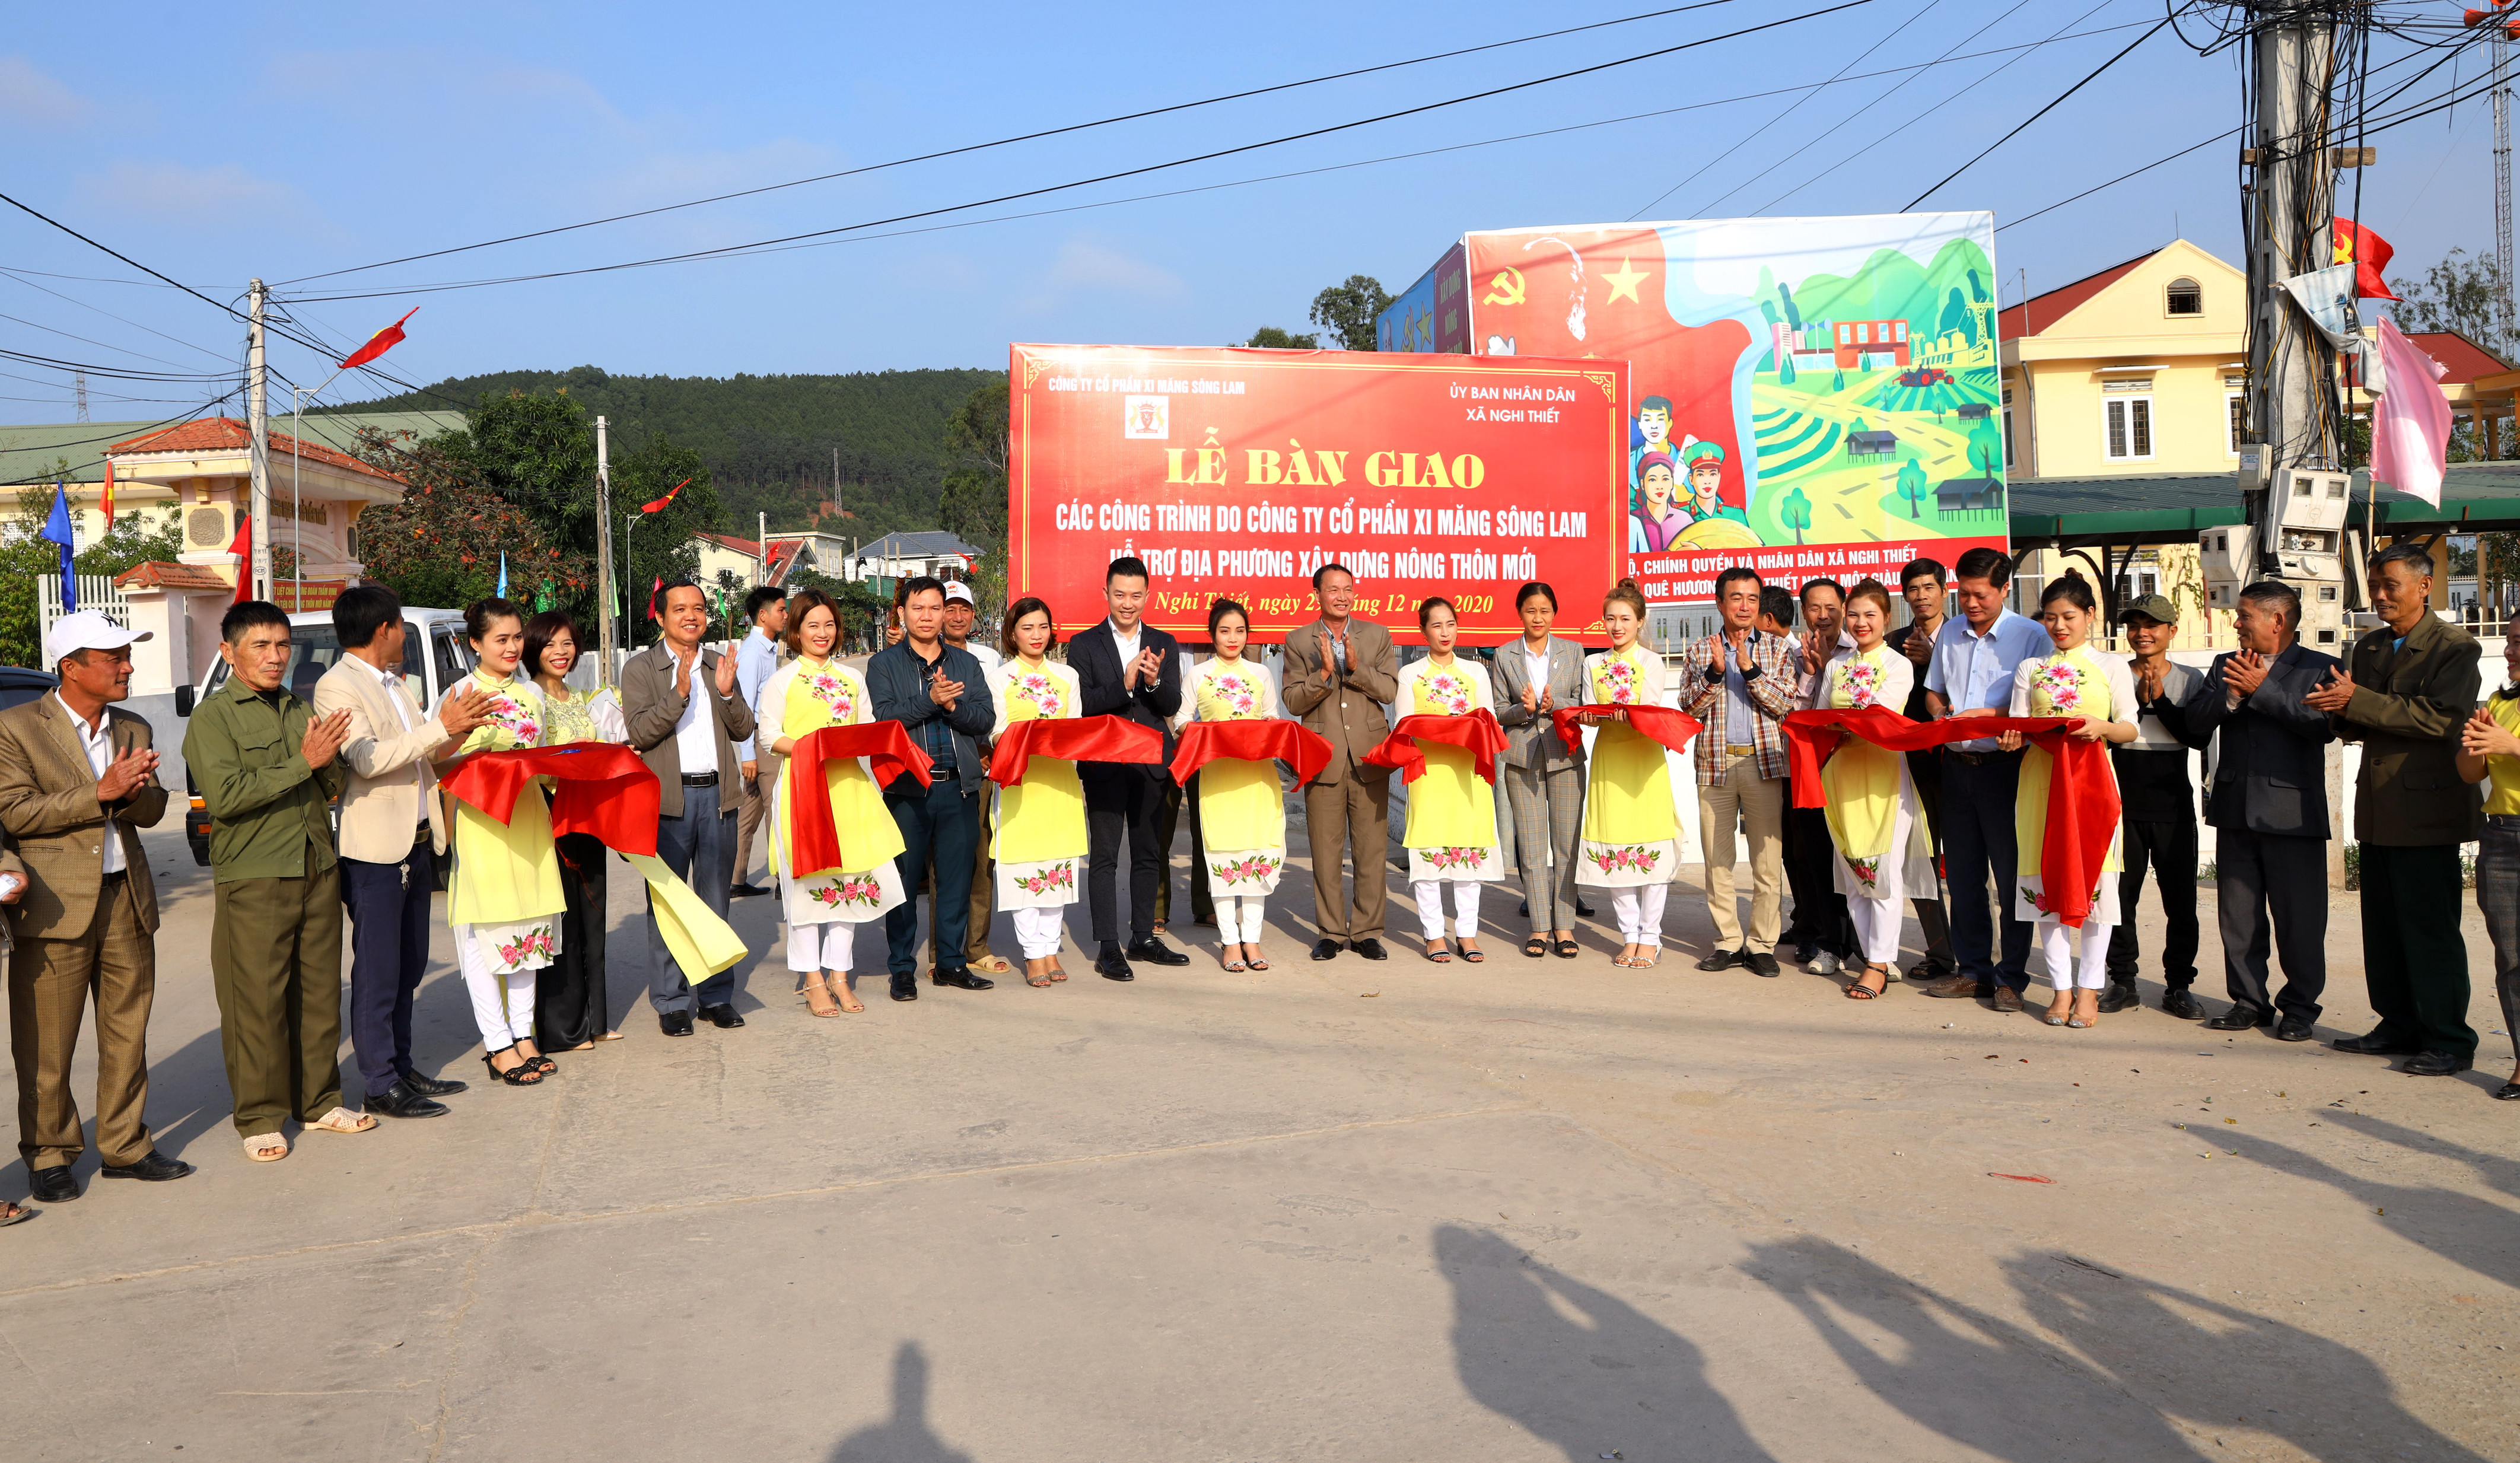 Lãnh đạo Công ty CP Xi măng Sông Lam và xã Nghi Thiết cắt băng khánh thành các công trình hỗ trợ cùng Nhân dân xã hoàn thành các tiêu chí xây dựng nông thôn mới. Ảnh Nguyên Sơn